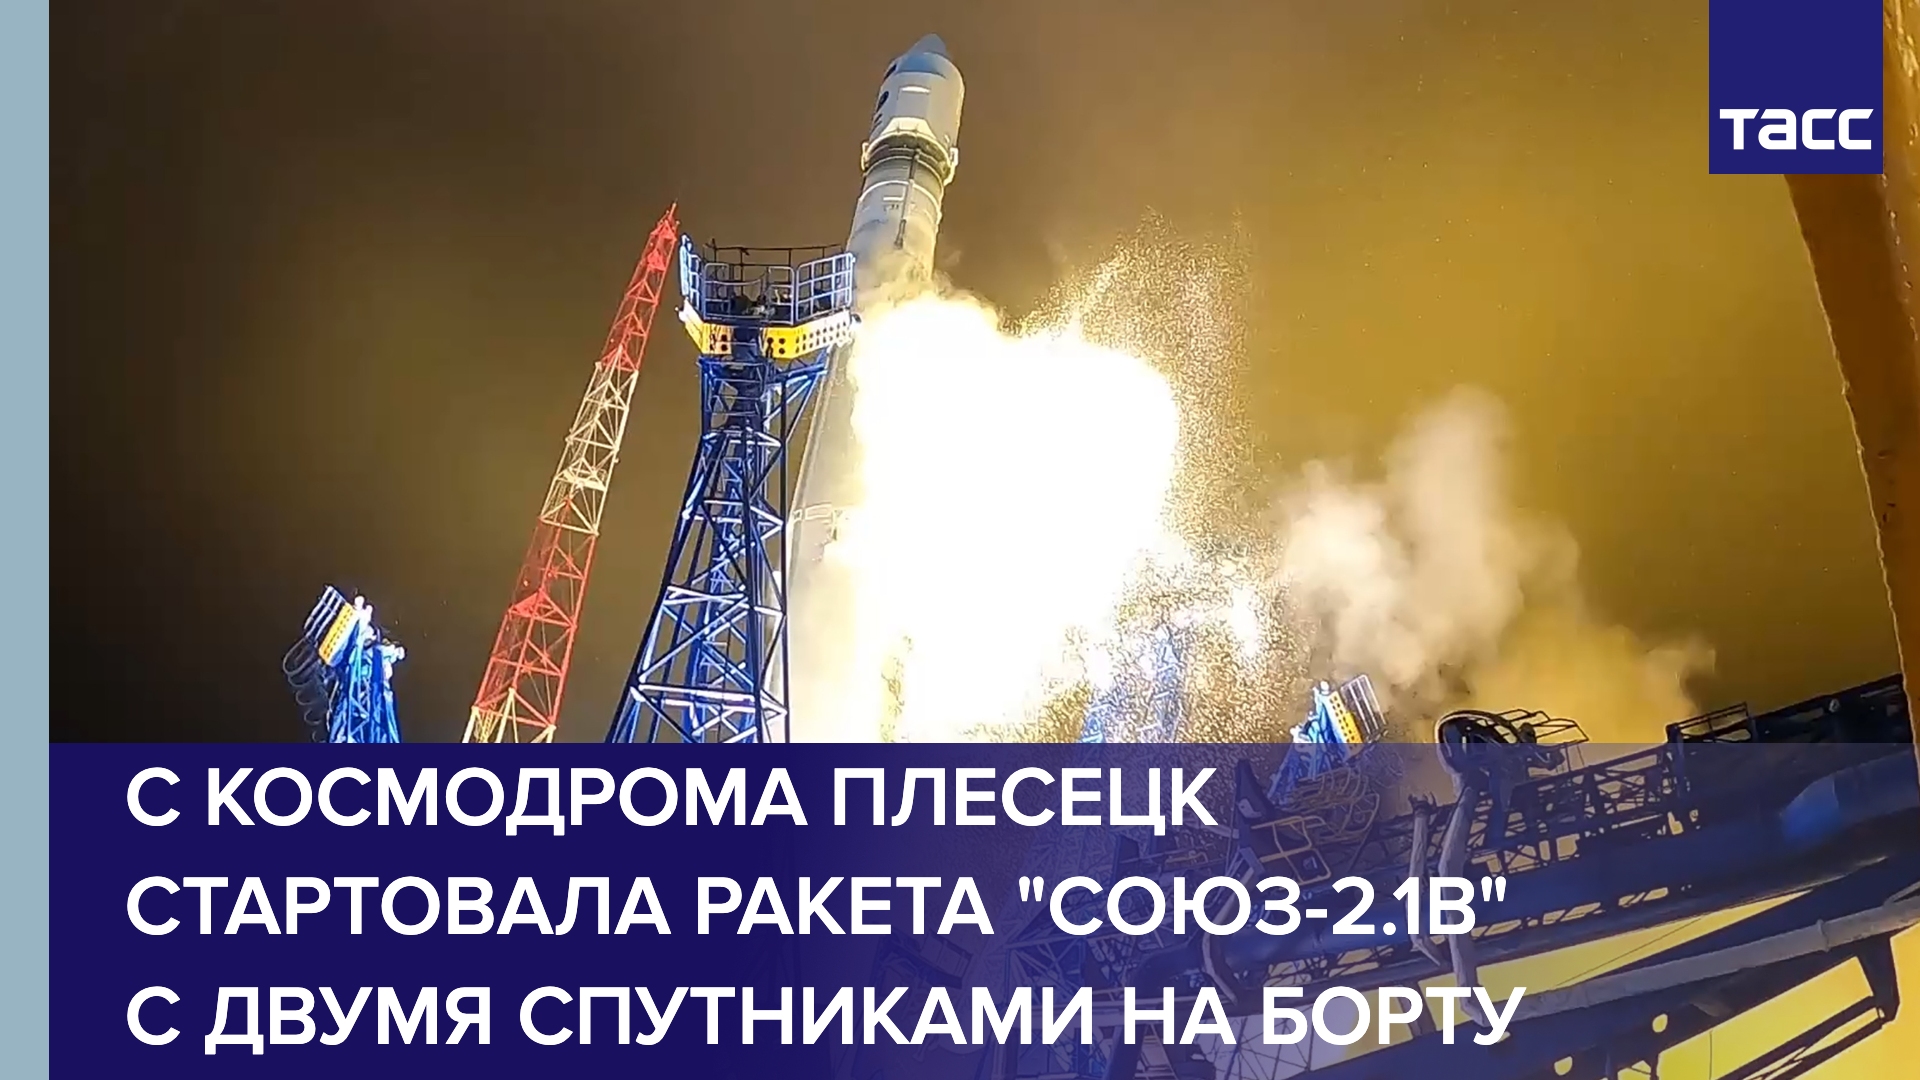 С космодрома Плесецк стартовала ракета "Союз-2.1в" с двумя спутниками на борту